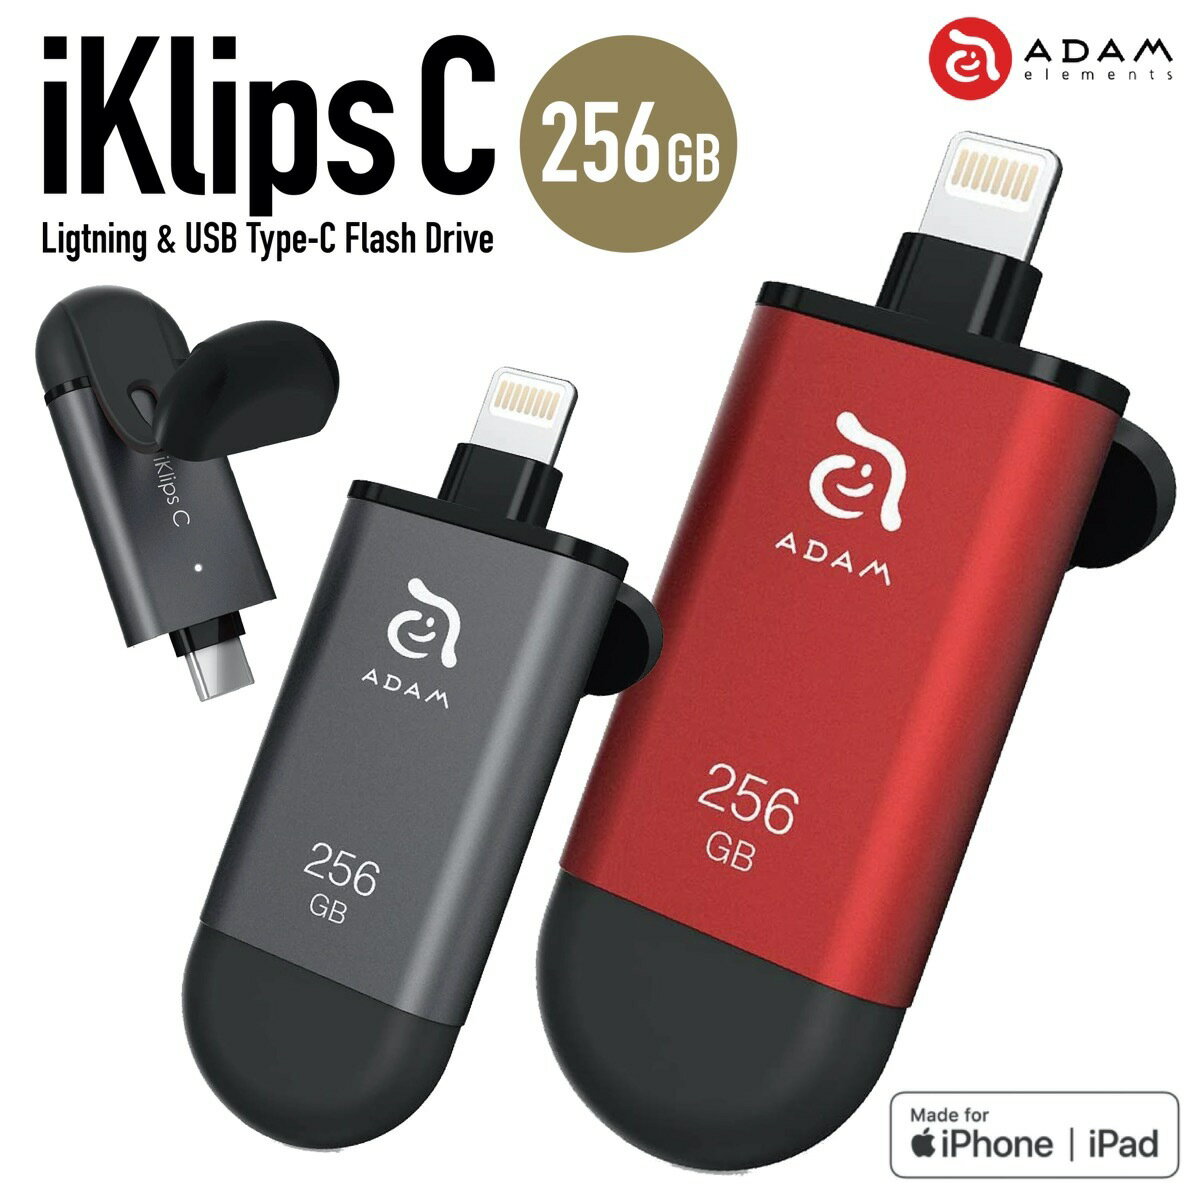 ADAM elements iKlips C 256GB Lightning USBメモリ USB Type-C iPhone iPad MFi認証 Android アンドロイド ライトニング 簡単 バックアップ 拡張 アイクリプス アダムエレメンツ (3C)iKlips C 256GB